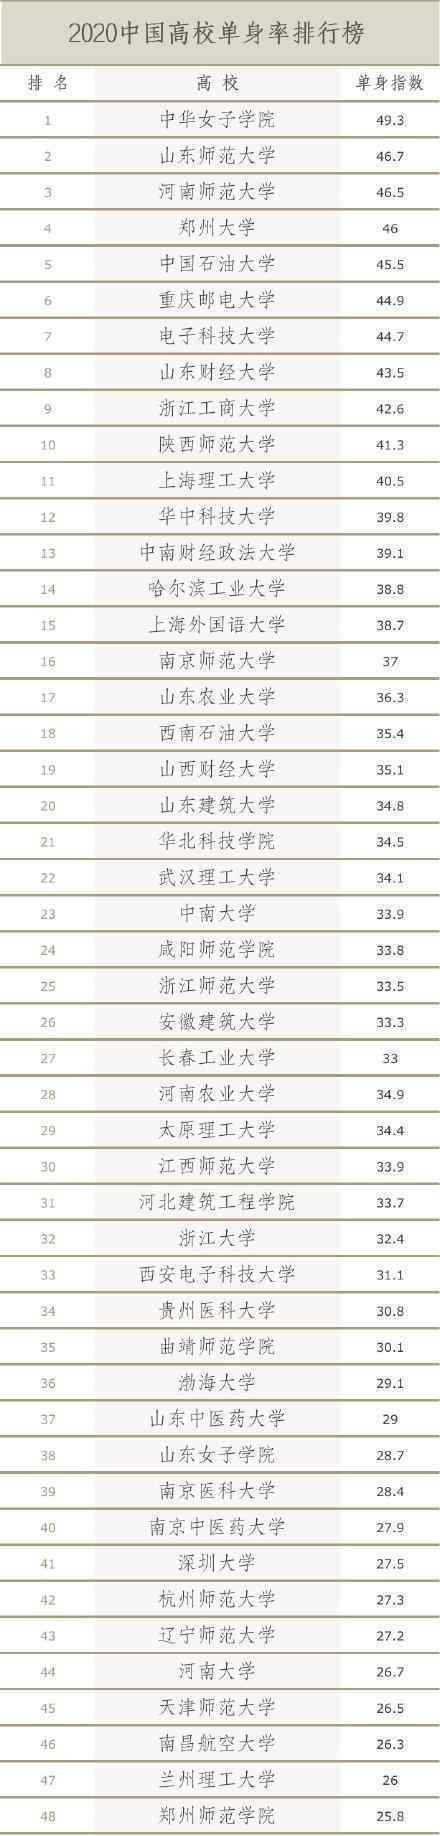 中国高校单身率排行榜出炉 真相原来是这样！